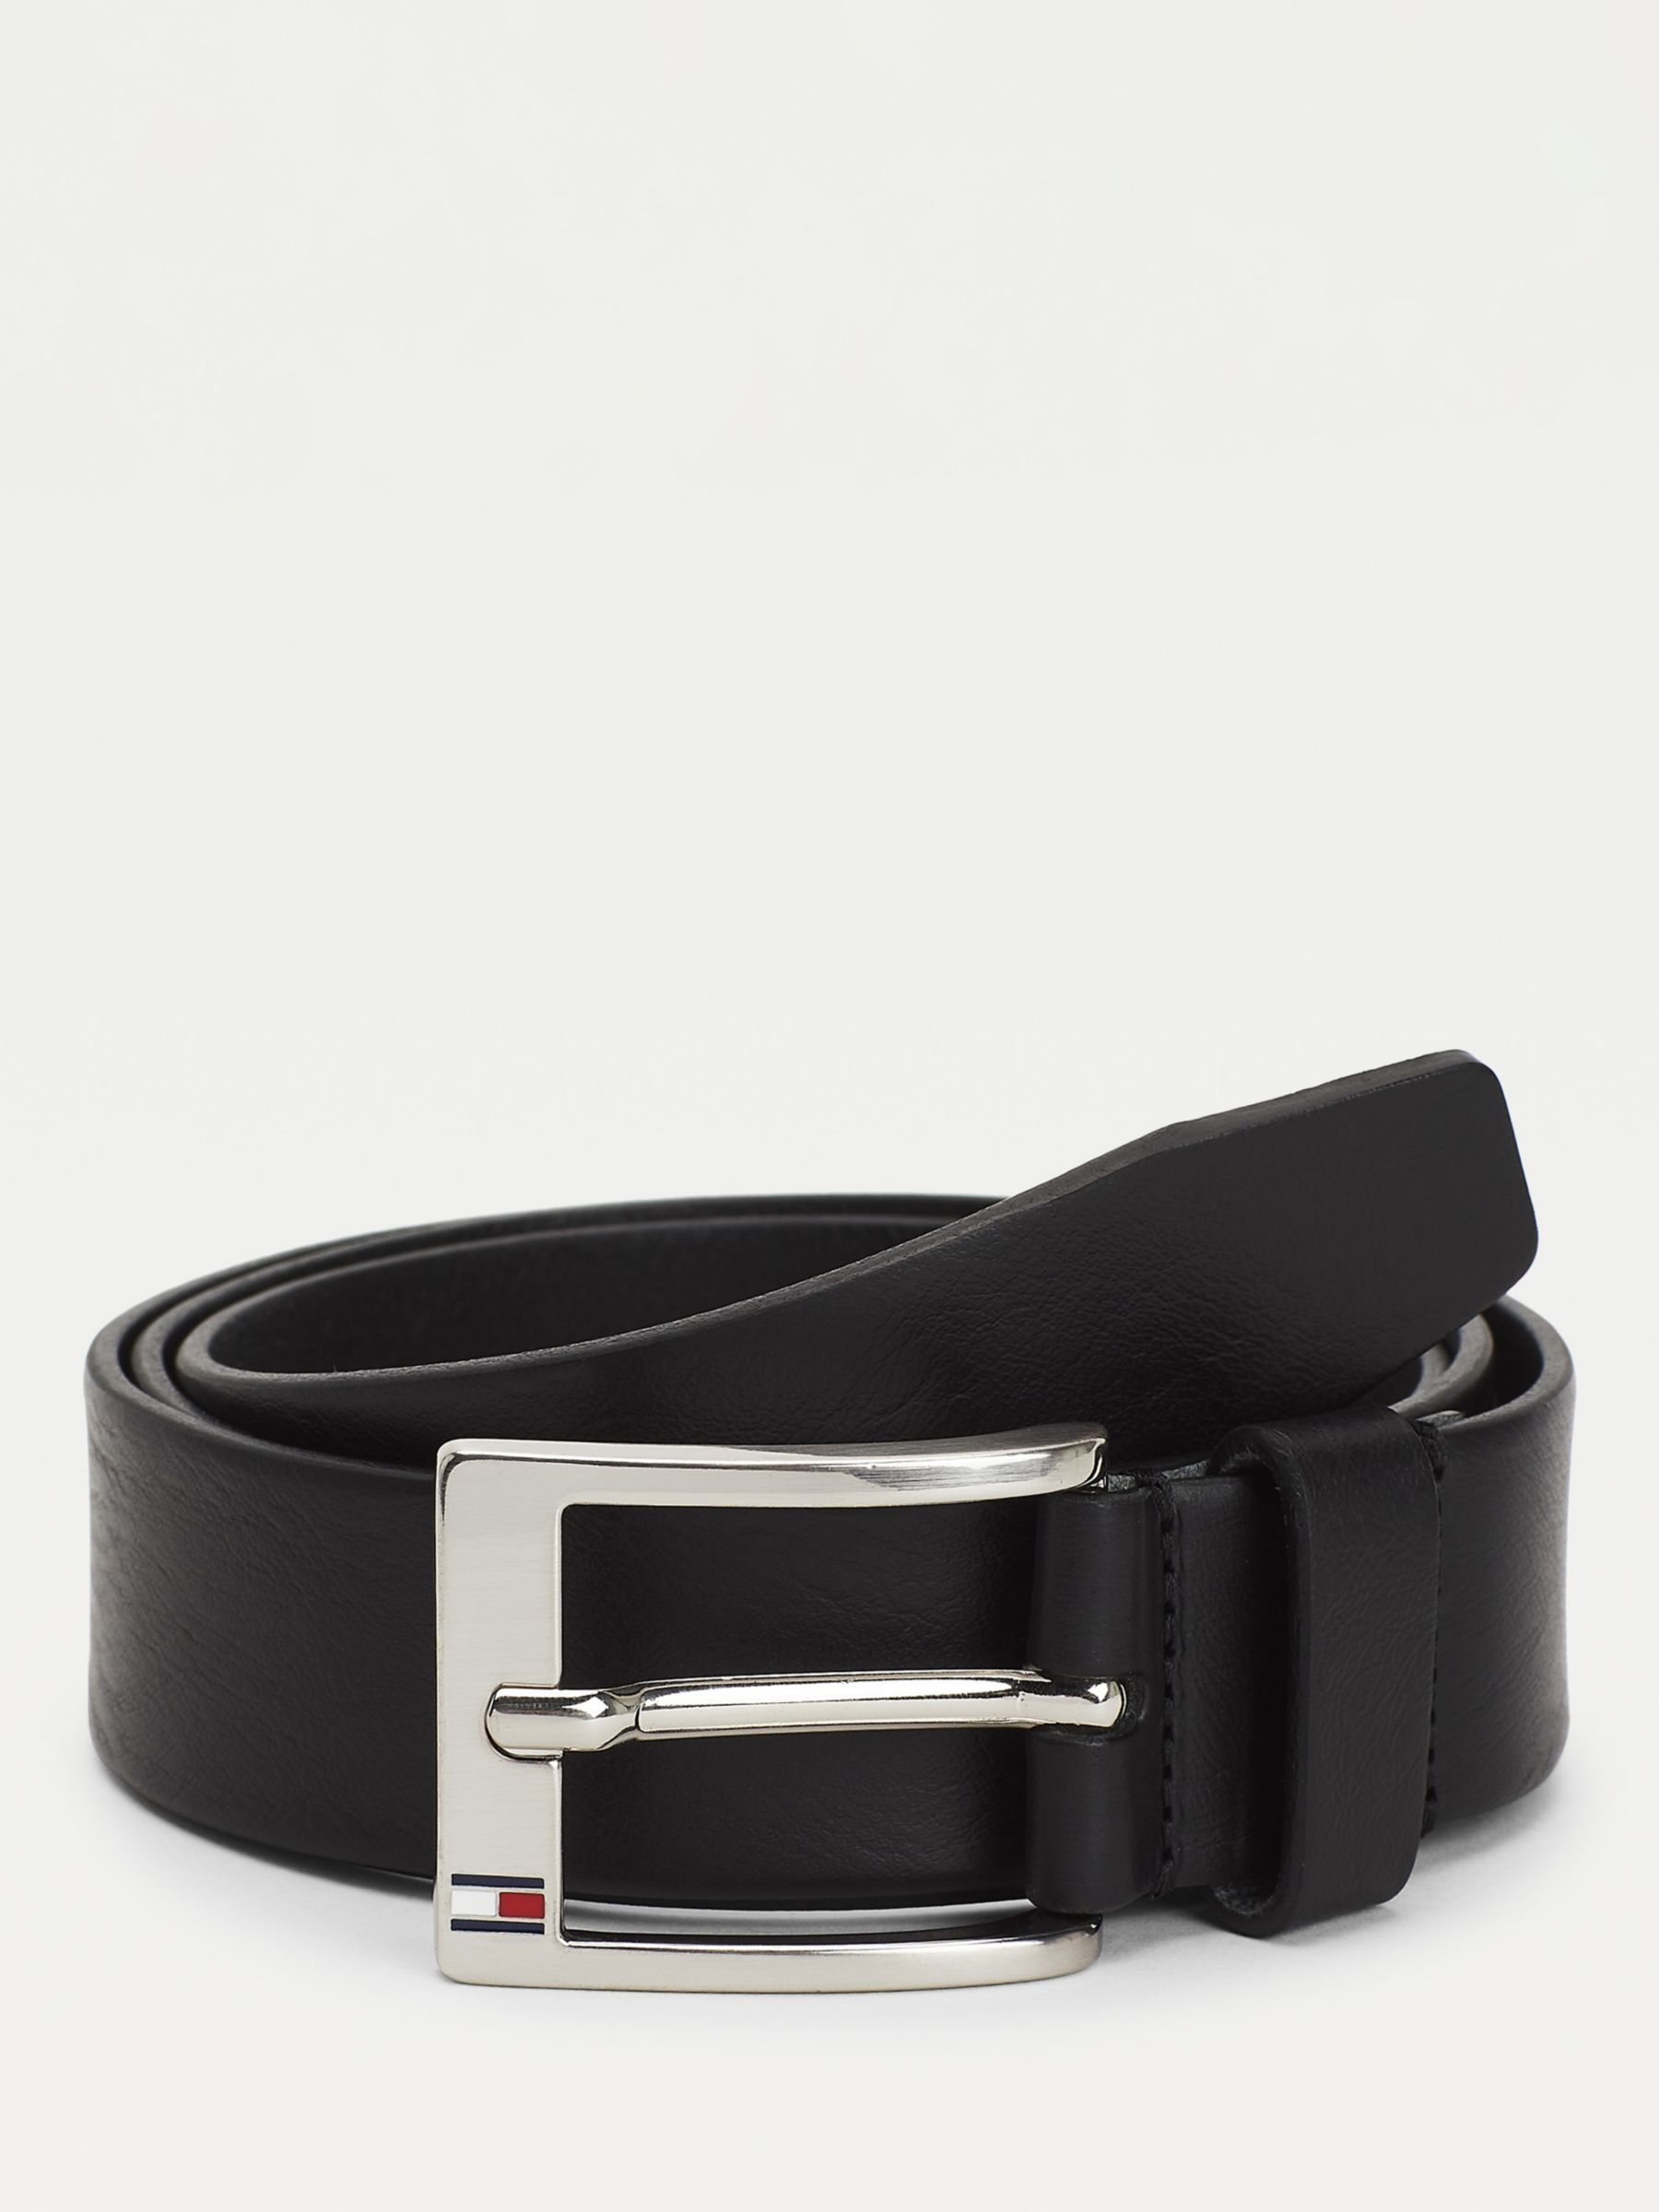 Tommy Hilfiger Leather Belt, Black at John Lewis & Partners